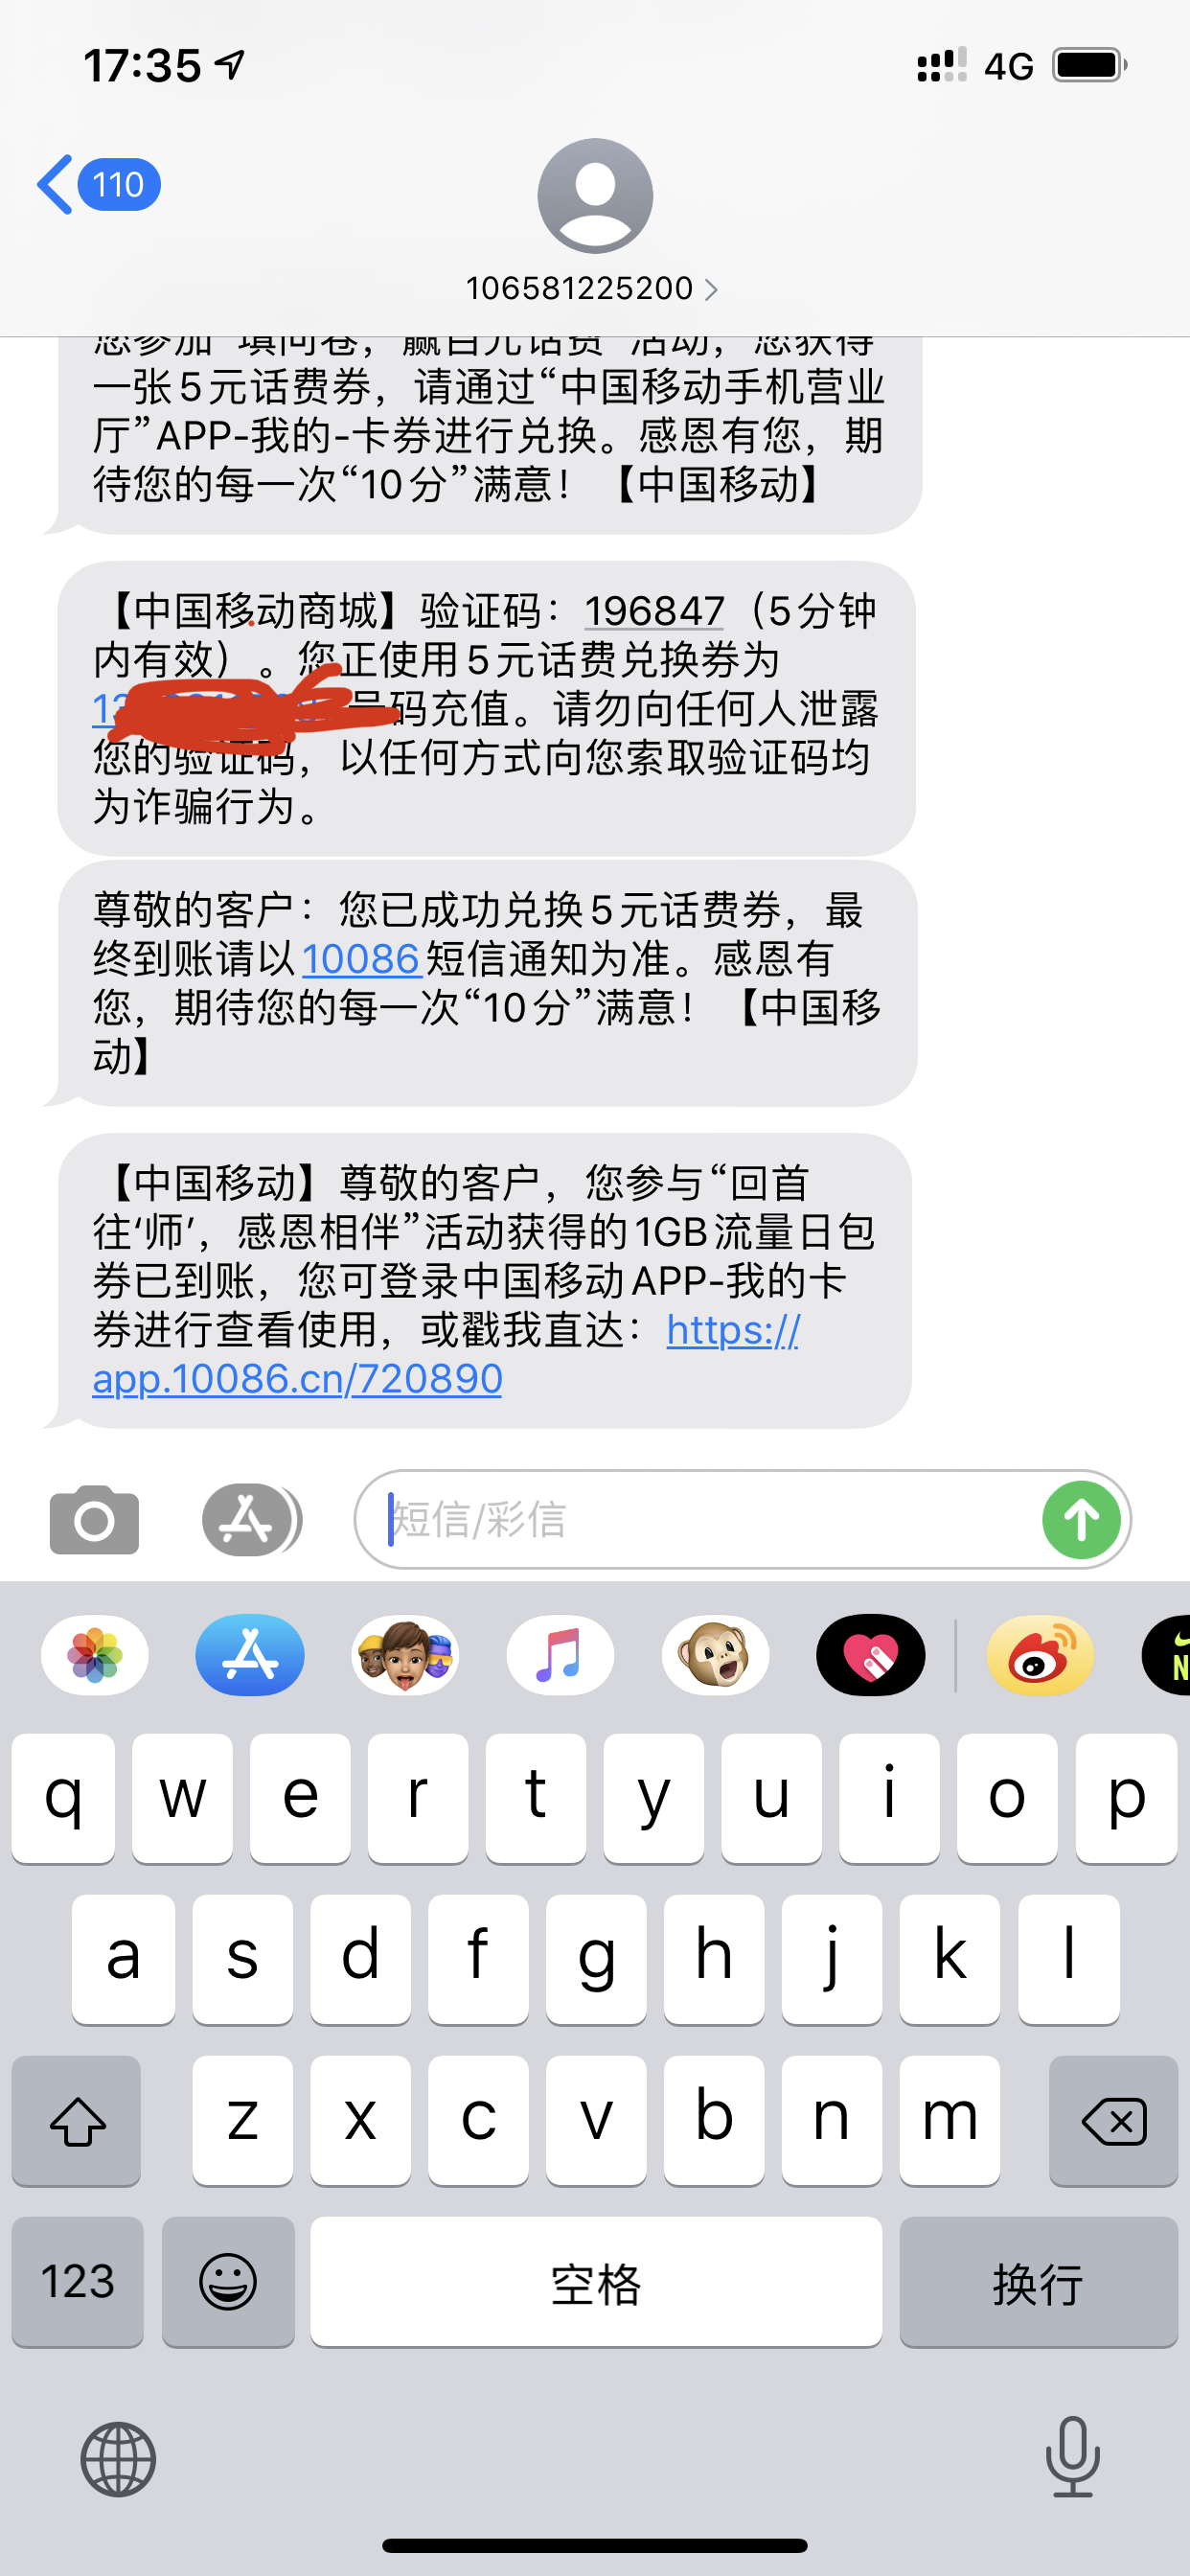 中国移动app，填问卷，送钱